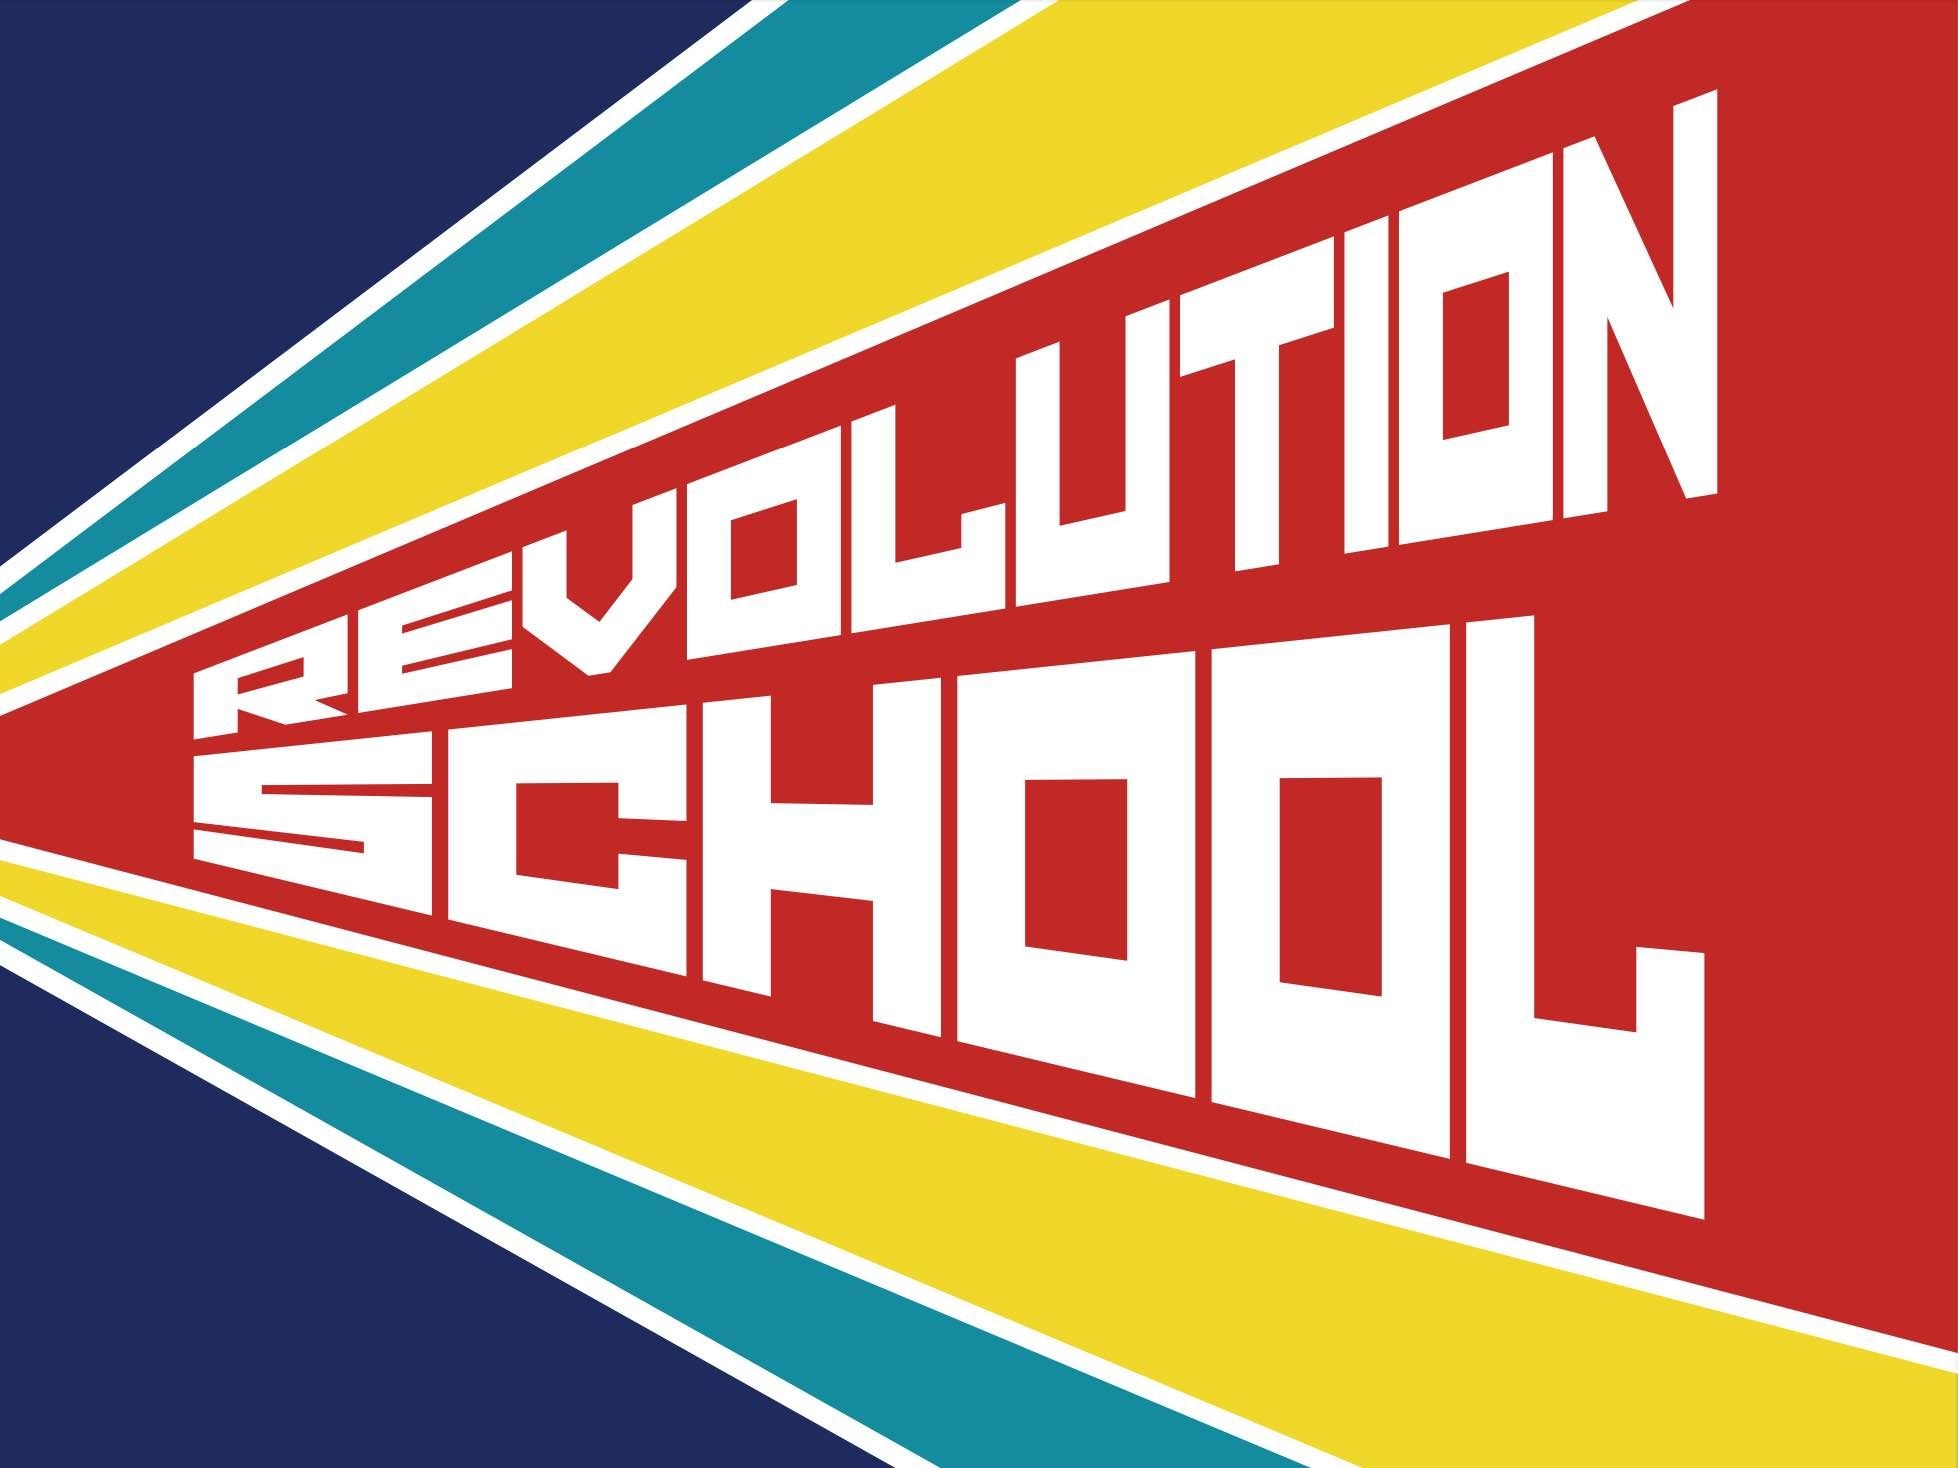 Revolution School